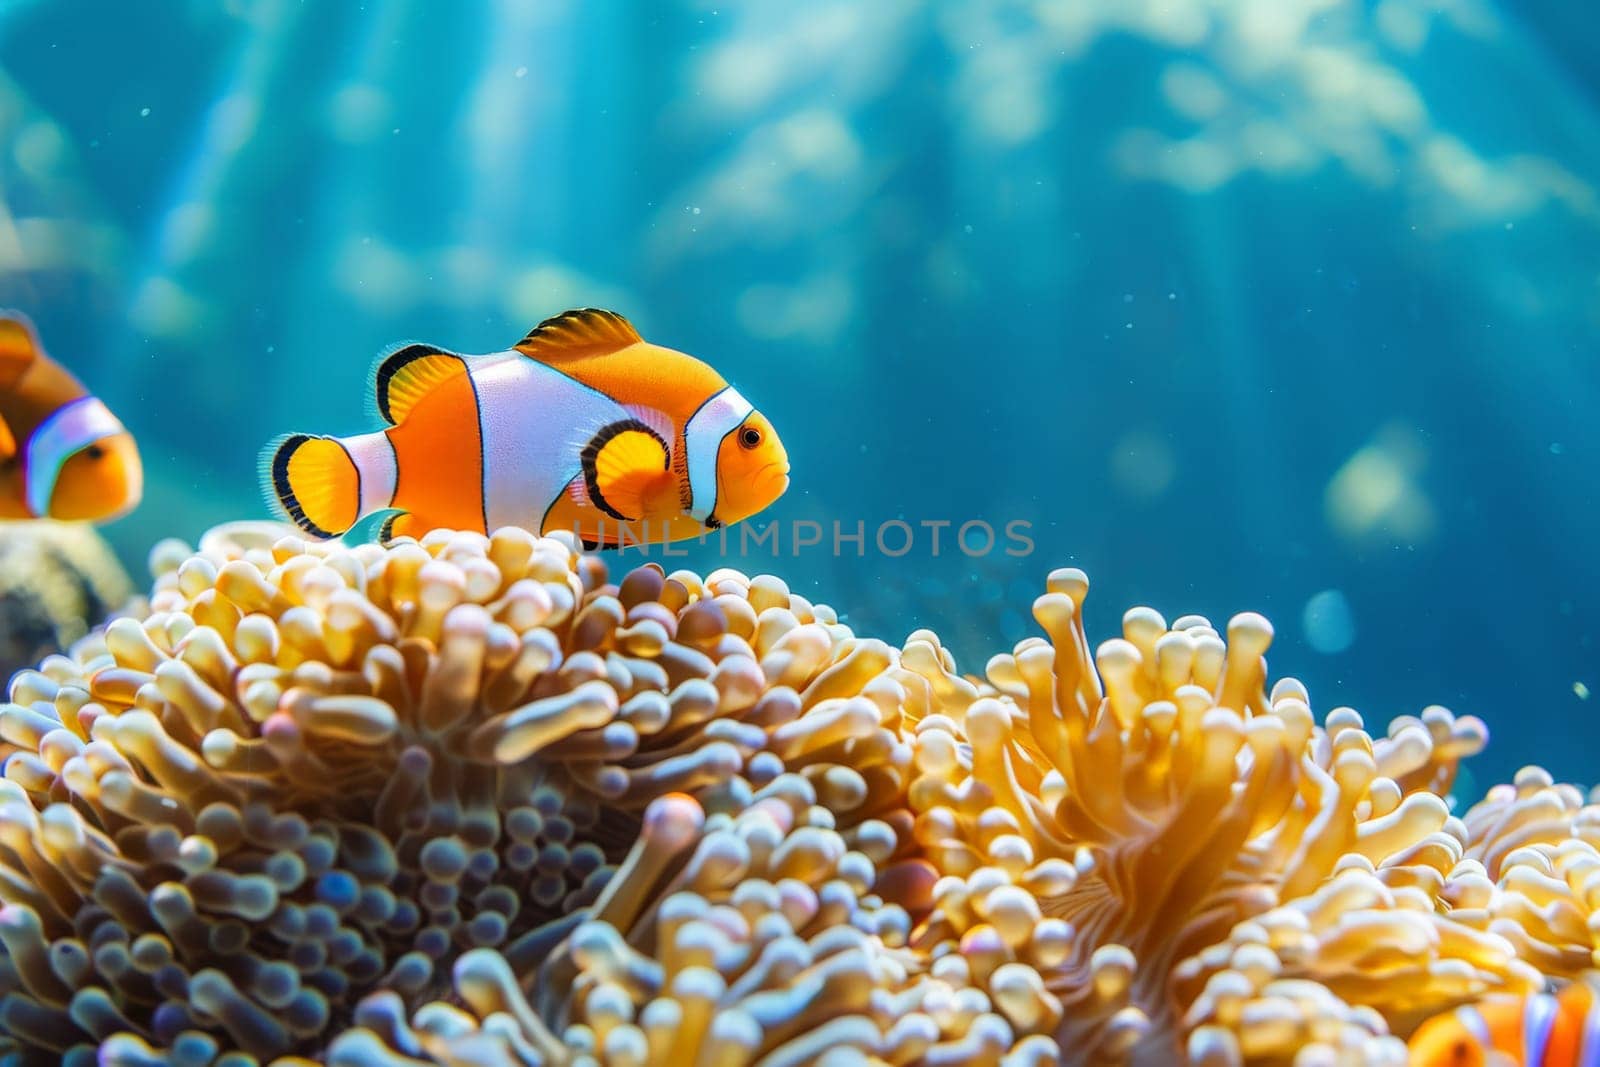 Captivating images of marine life, marine life ecosystem, Underwater image background.